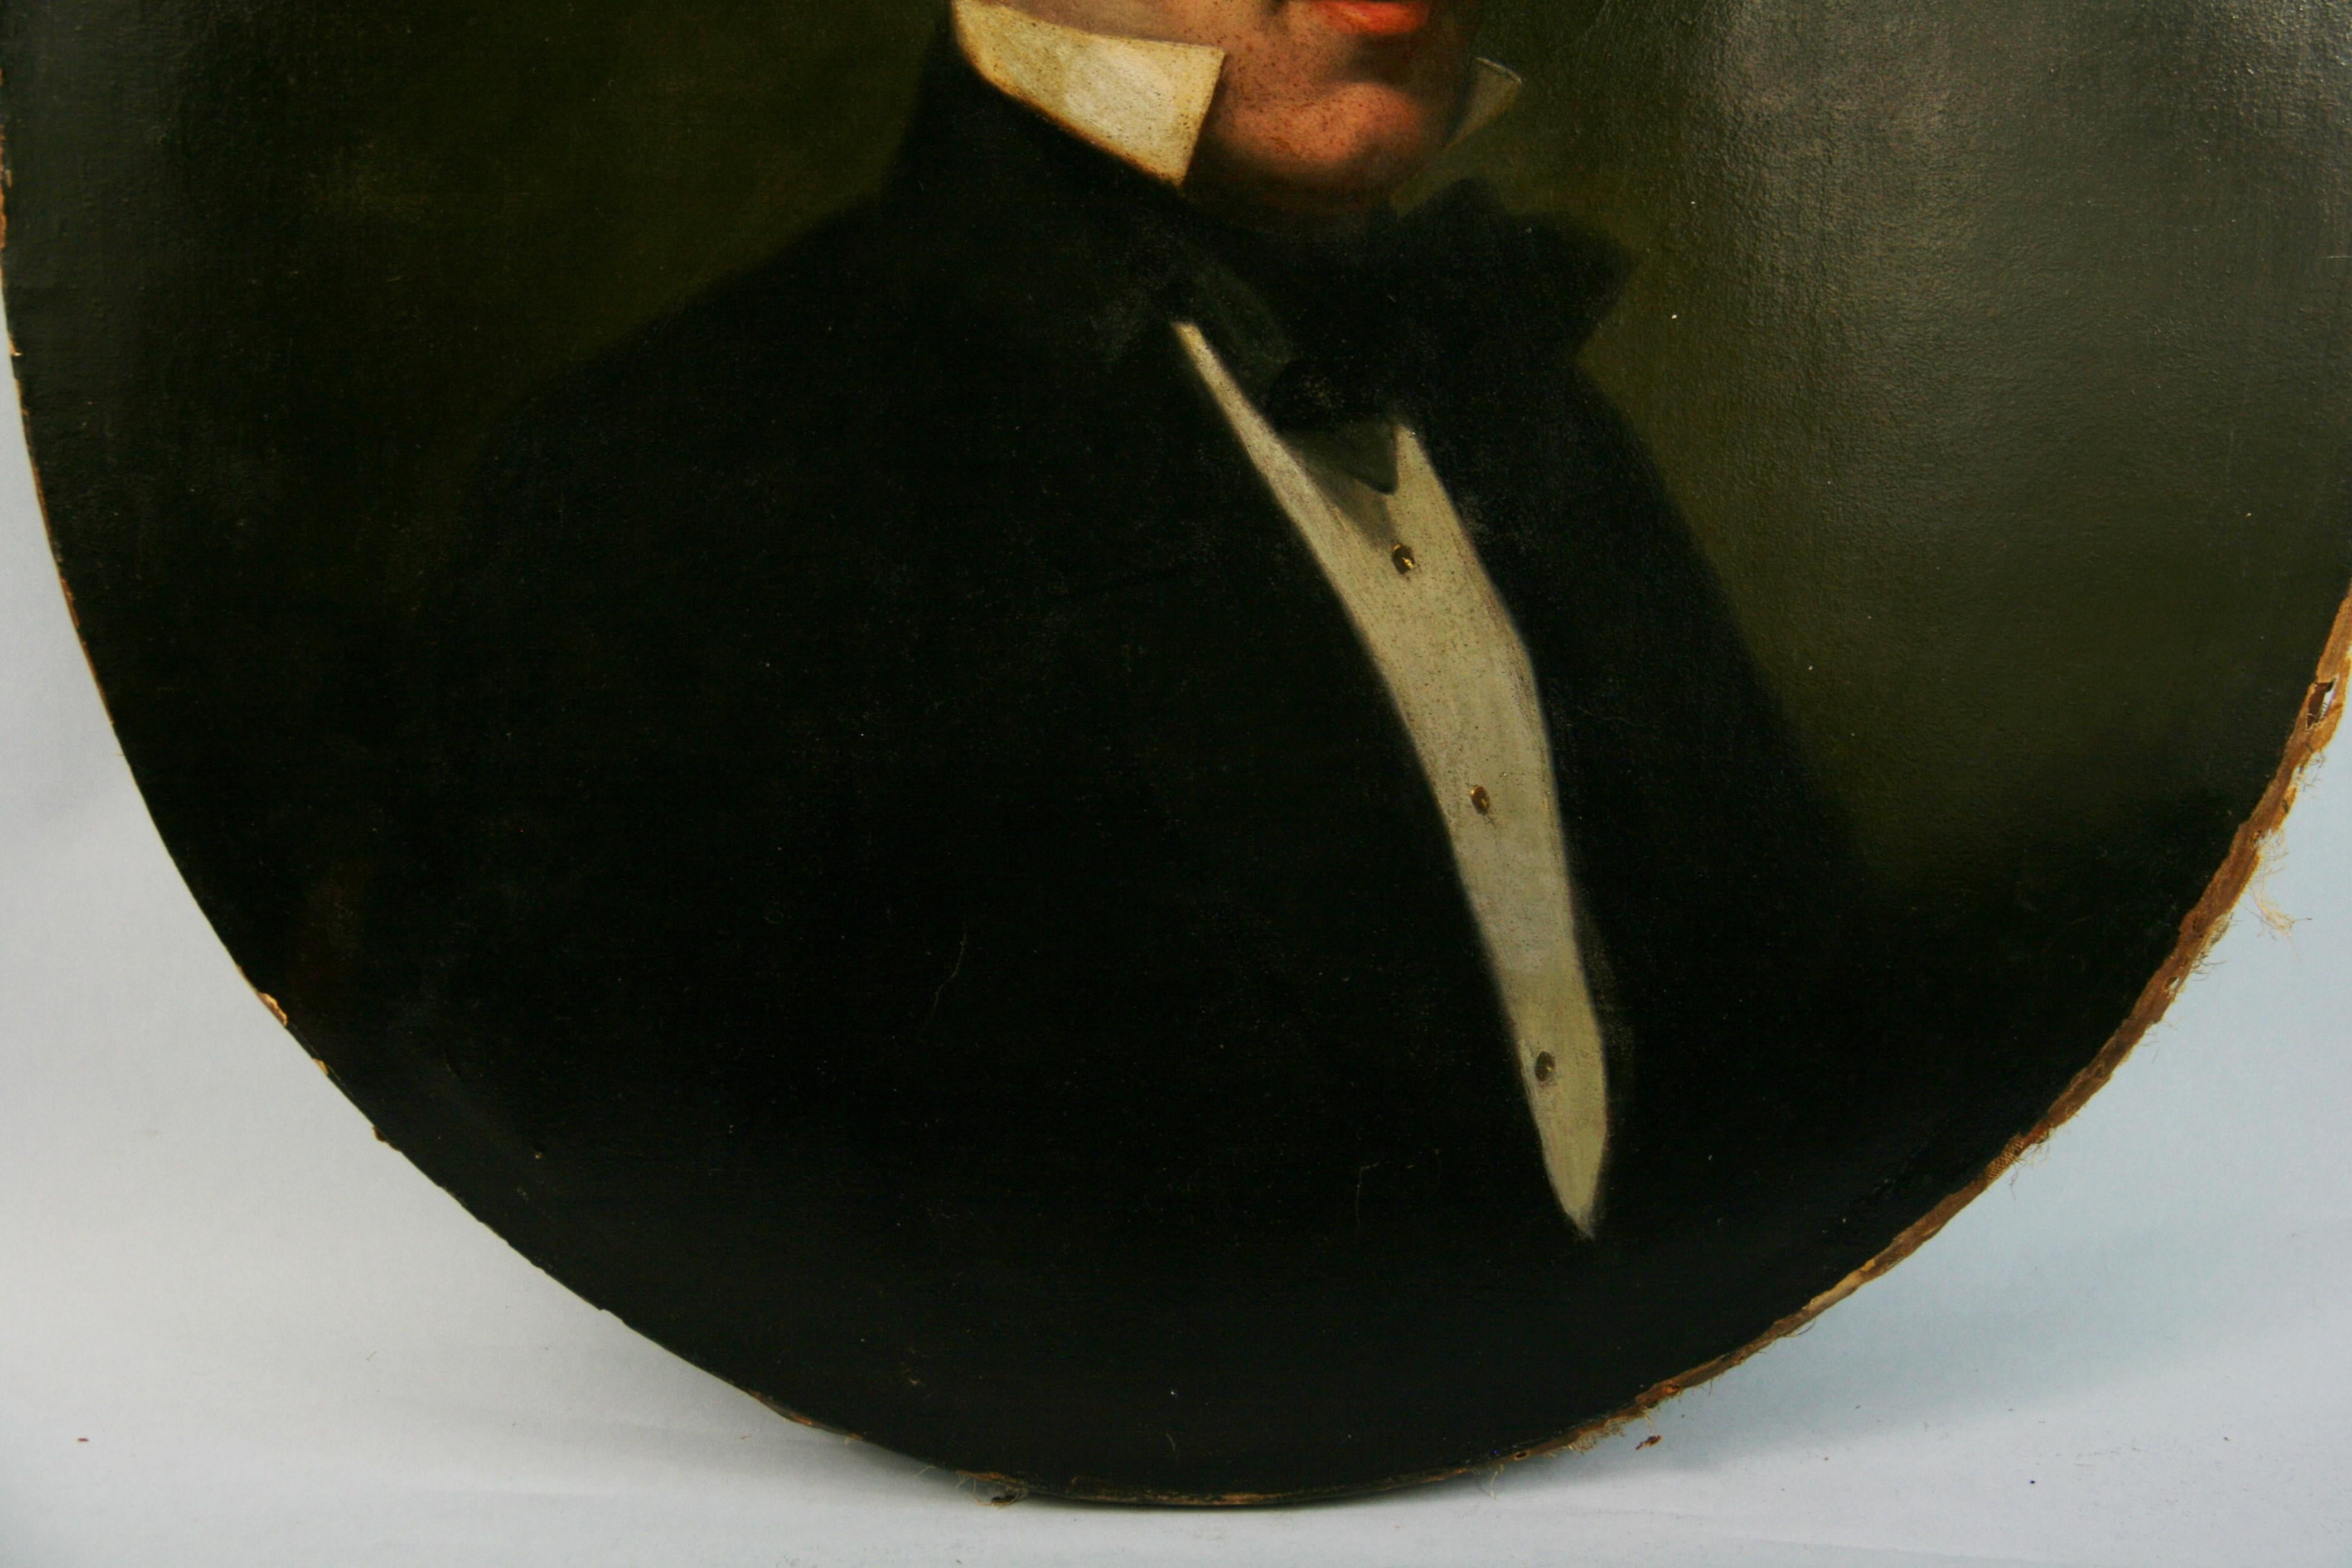 Antique American Gentleman Portrait 1890 - Black Portrait Painting by Unknown